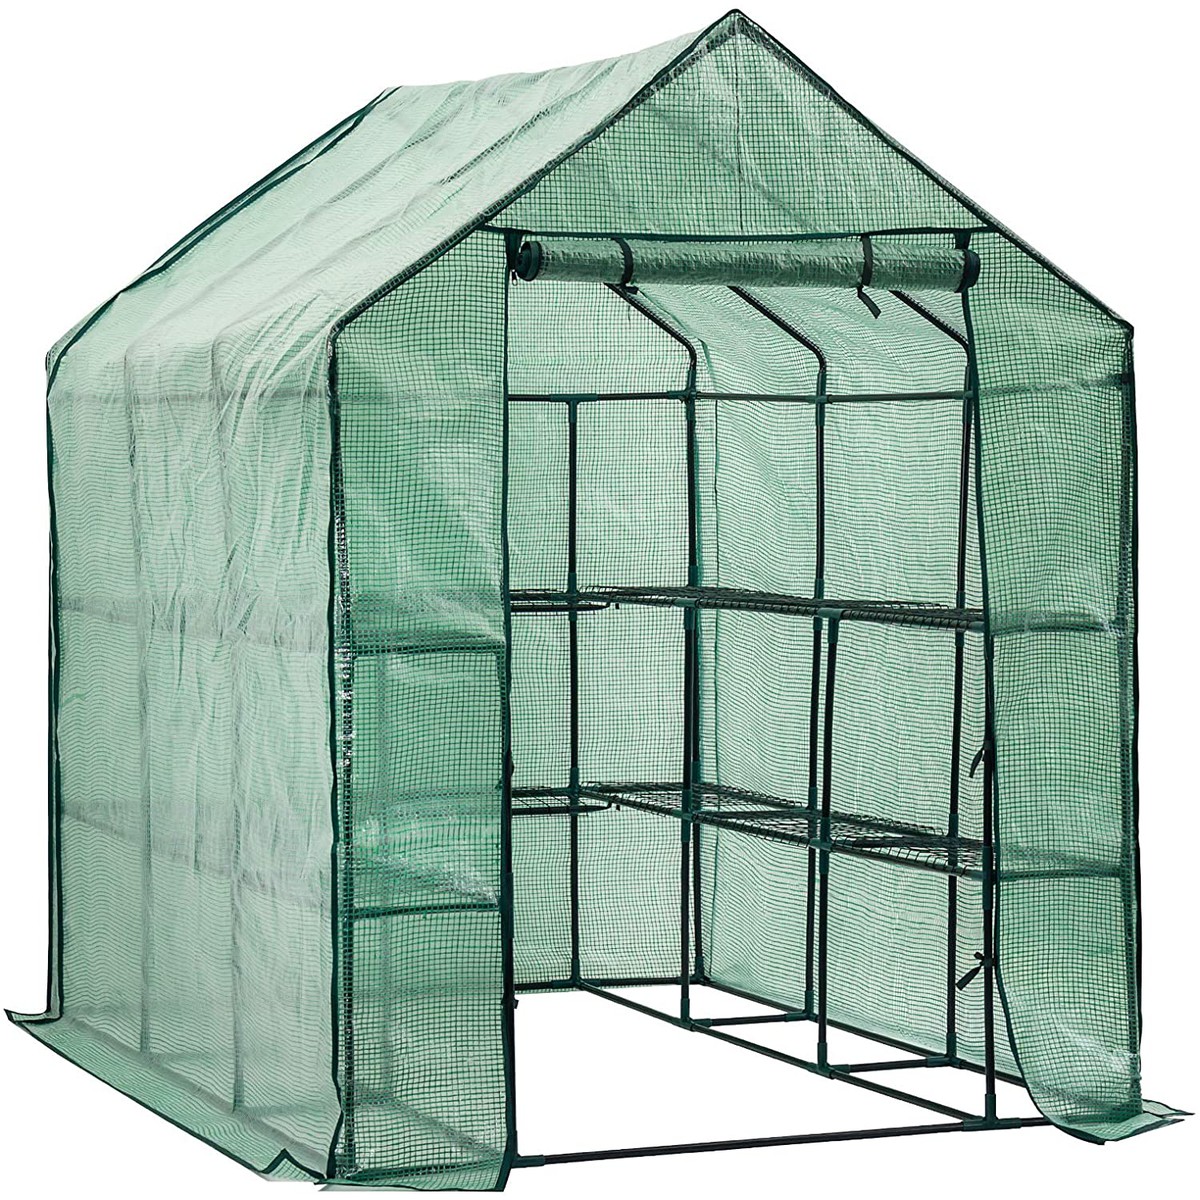   Serre Greenhouse GroZone Max  1.9x1.5x2.1m